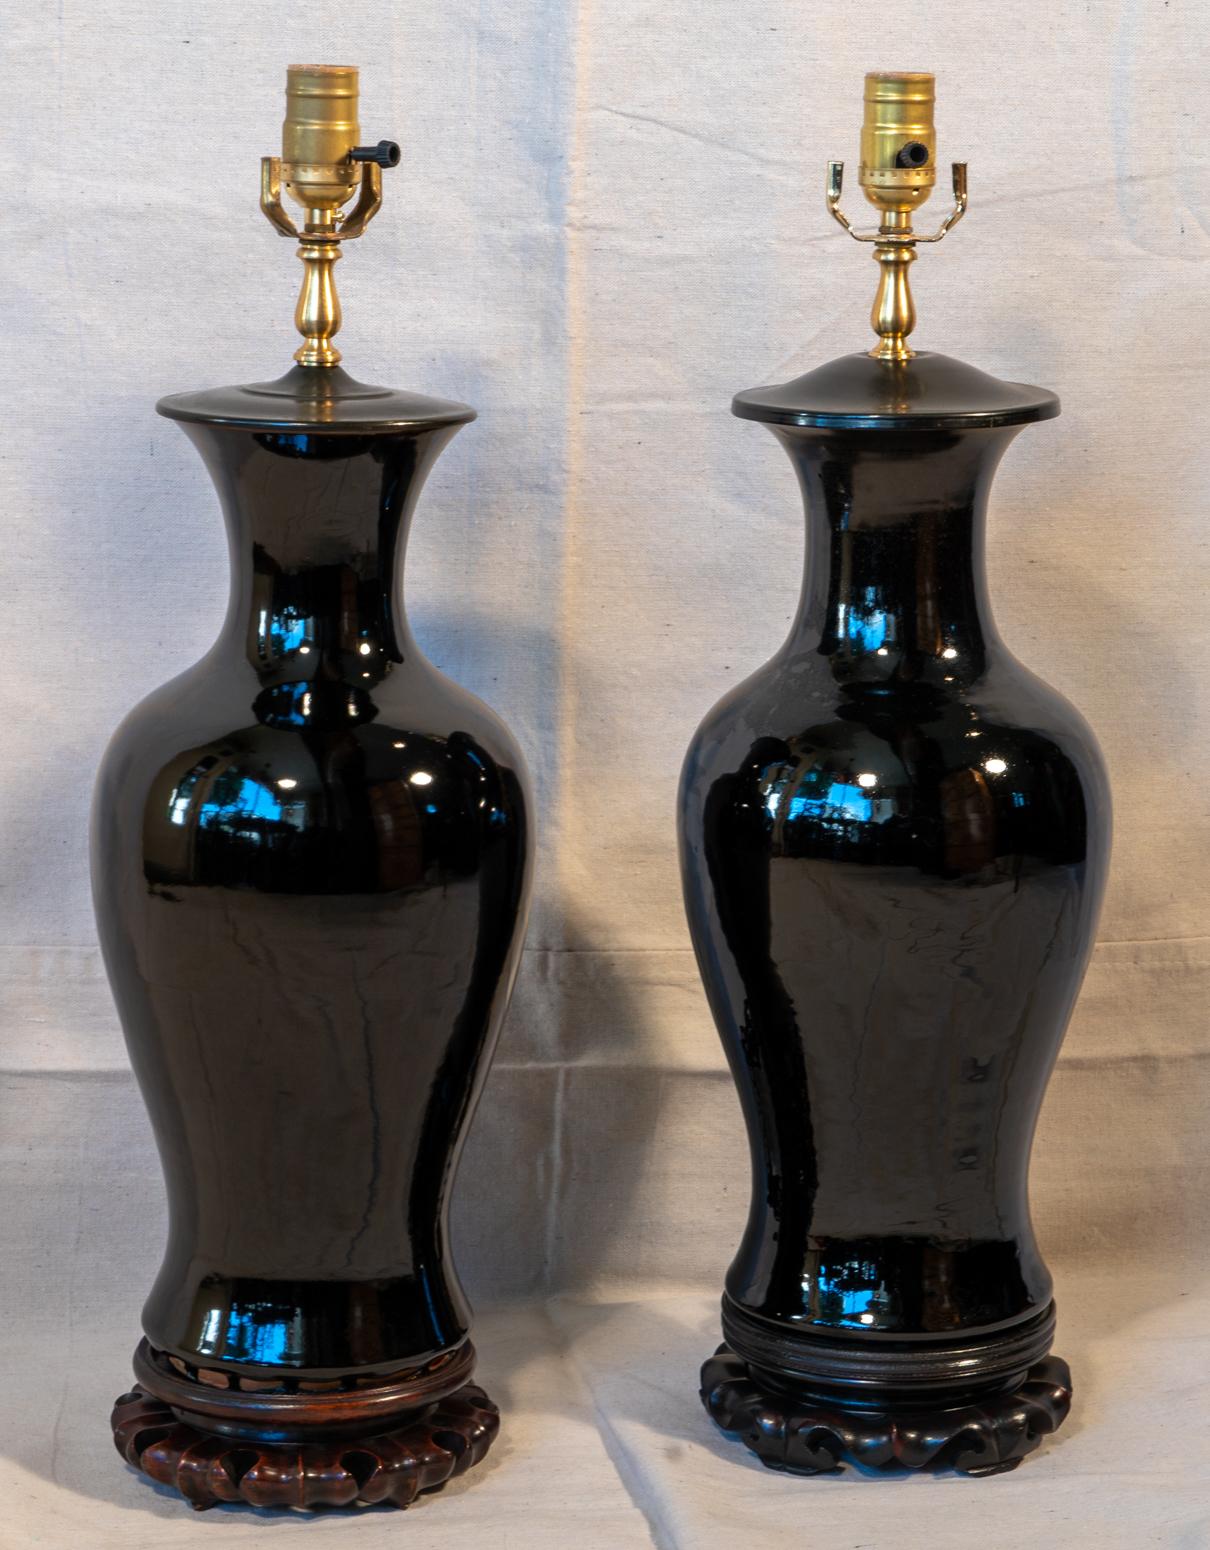 Paar chinesische Porzellanlampen mit schwarzem Spiegel aus dem 19. Jahrhundert, um 1880
Baluster Klassische Form. Beide auf alten Hartholzsockeln.
Zwei ähnliche Alter, Form und Qualität Vasen und Basen als Lampen.